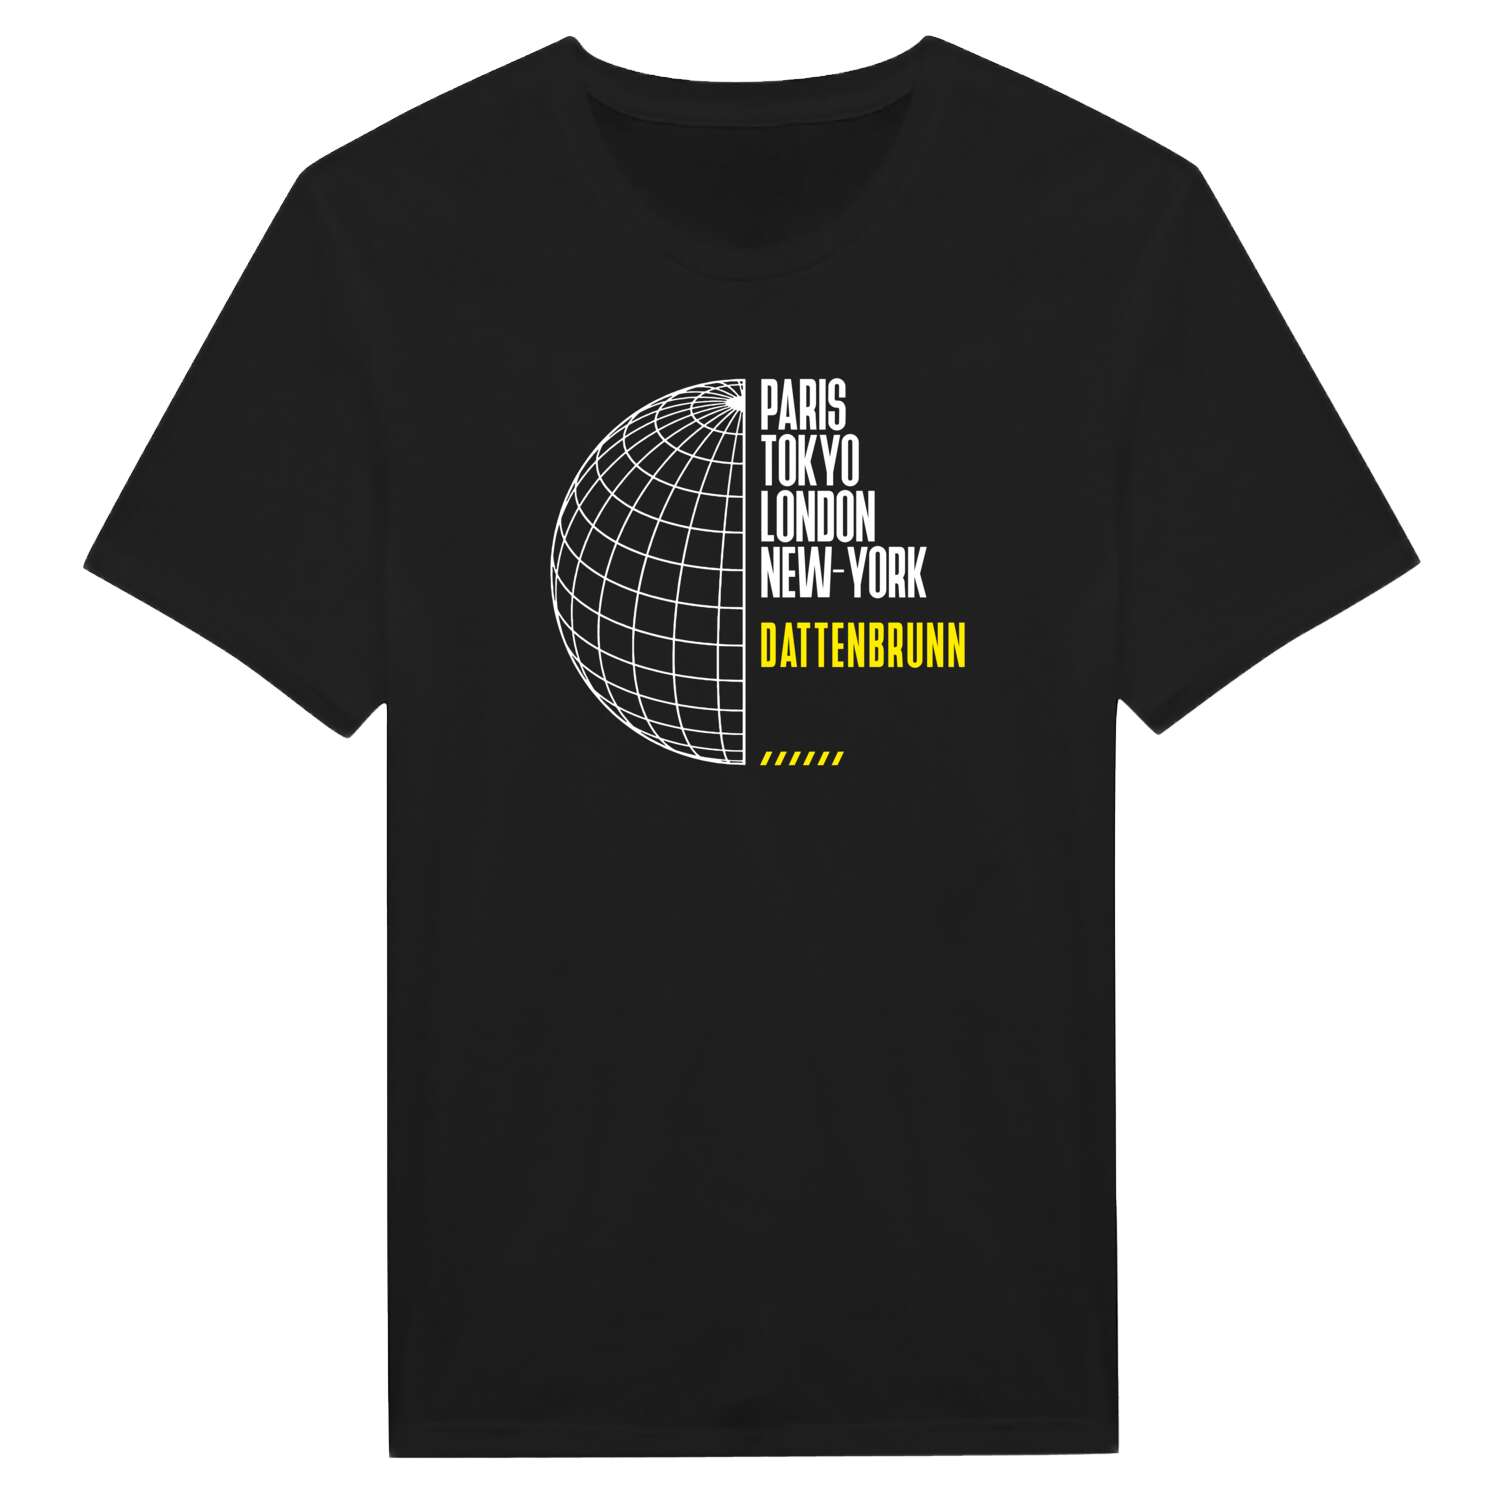 Dattenbrunn T-Shirt »Paris Tokyo London«